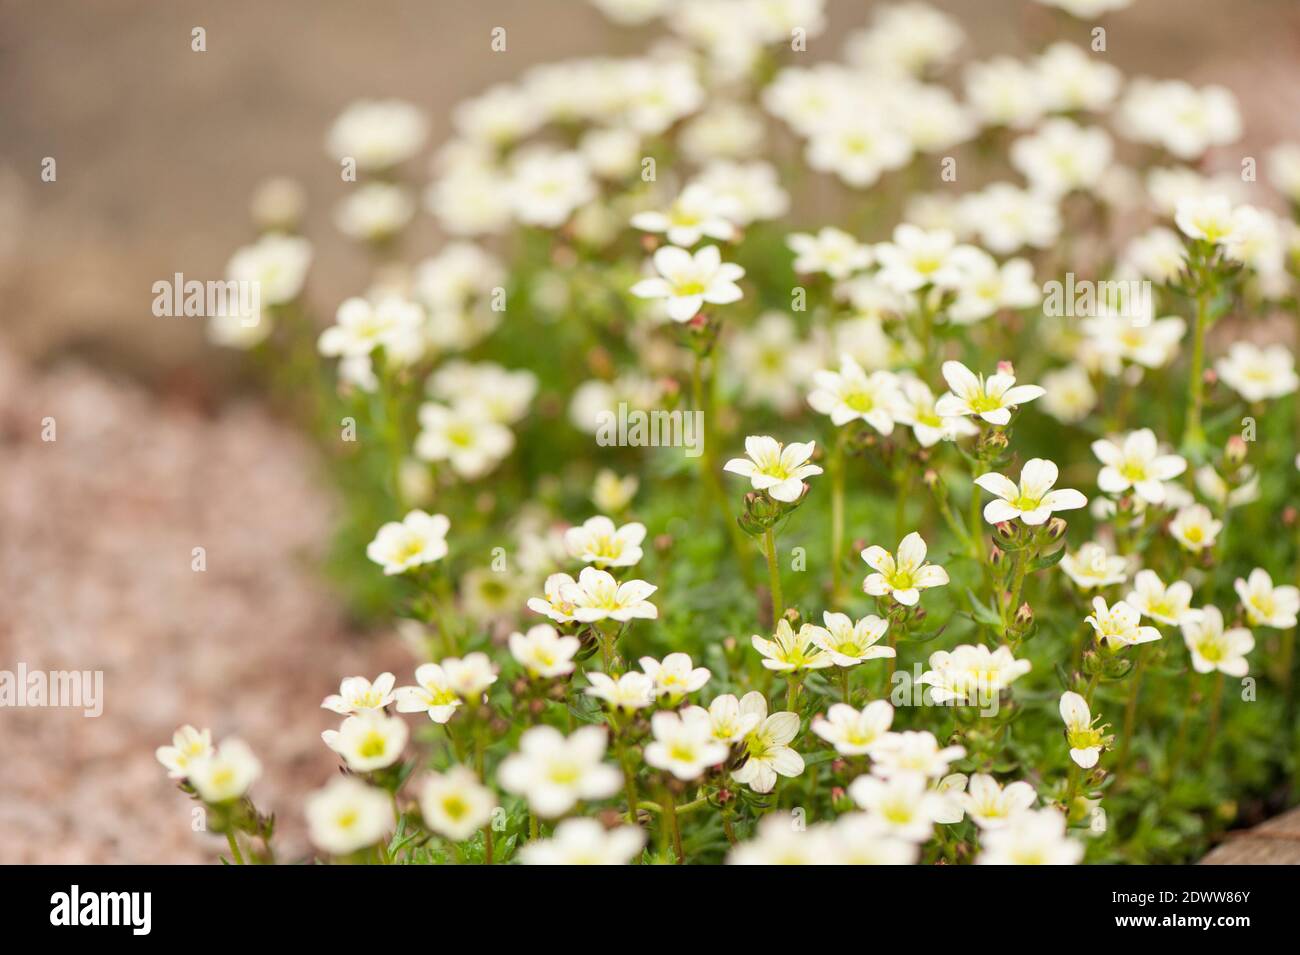 Saxifraga 'White Pixie' in flower. Stock Photo